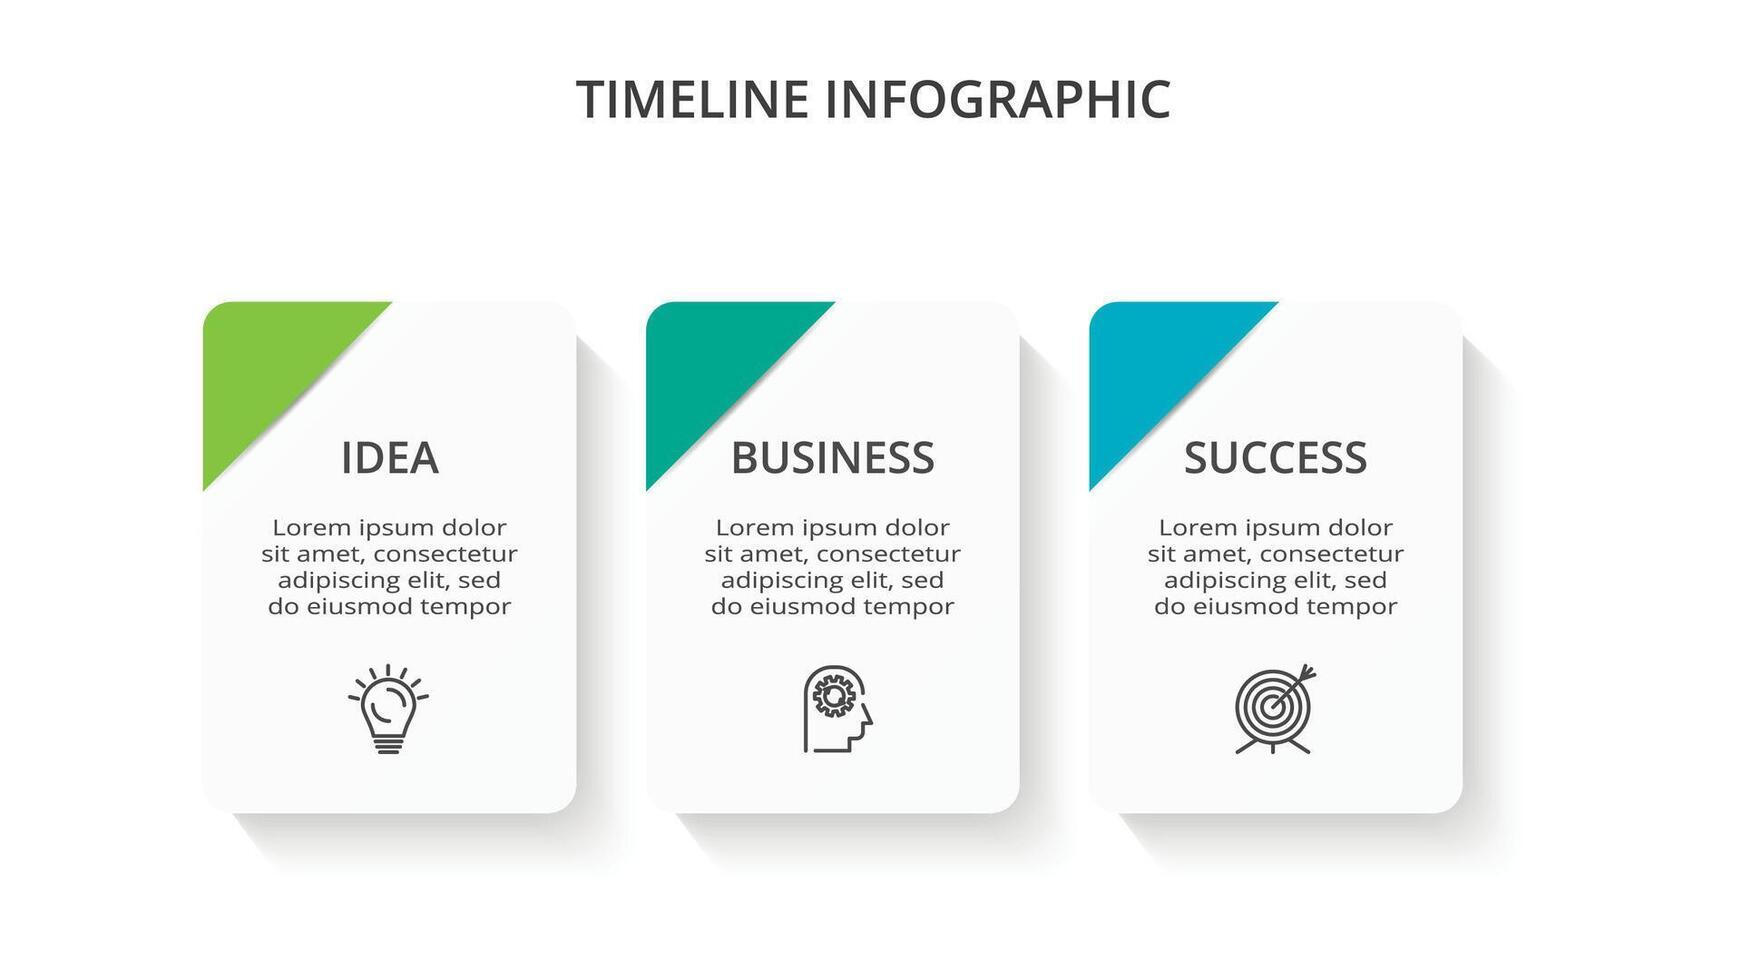 cronograma con 3 elementos, infografía modelo para web, negocio, presentaciones, vector ilustración